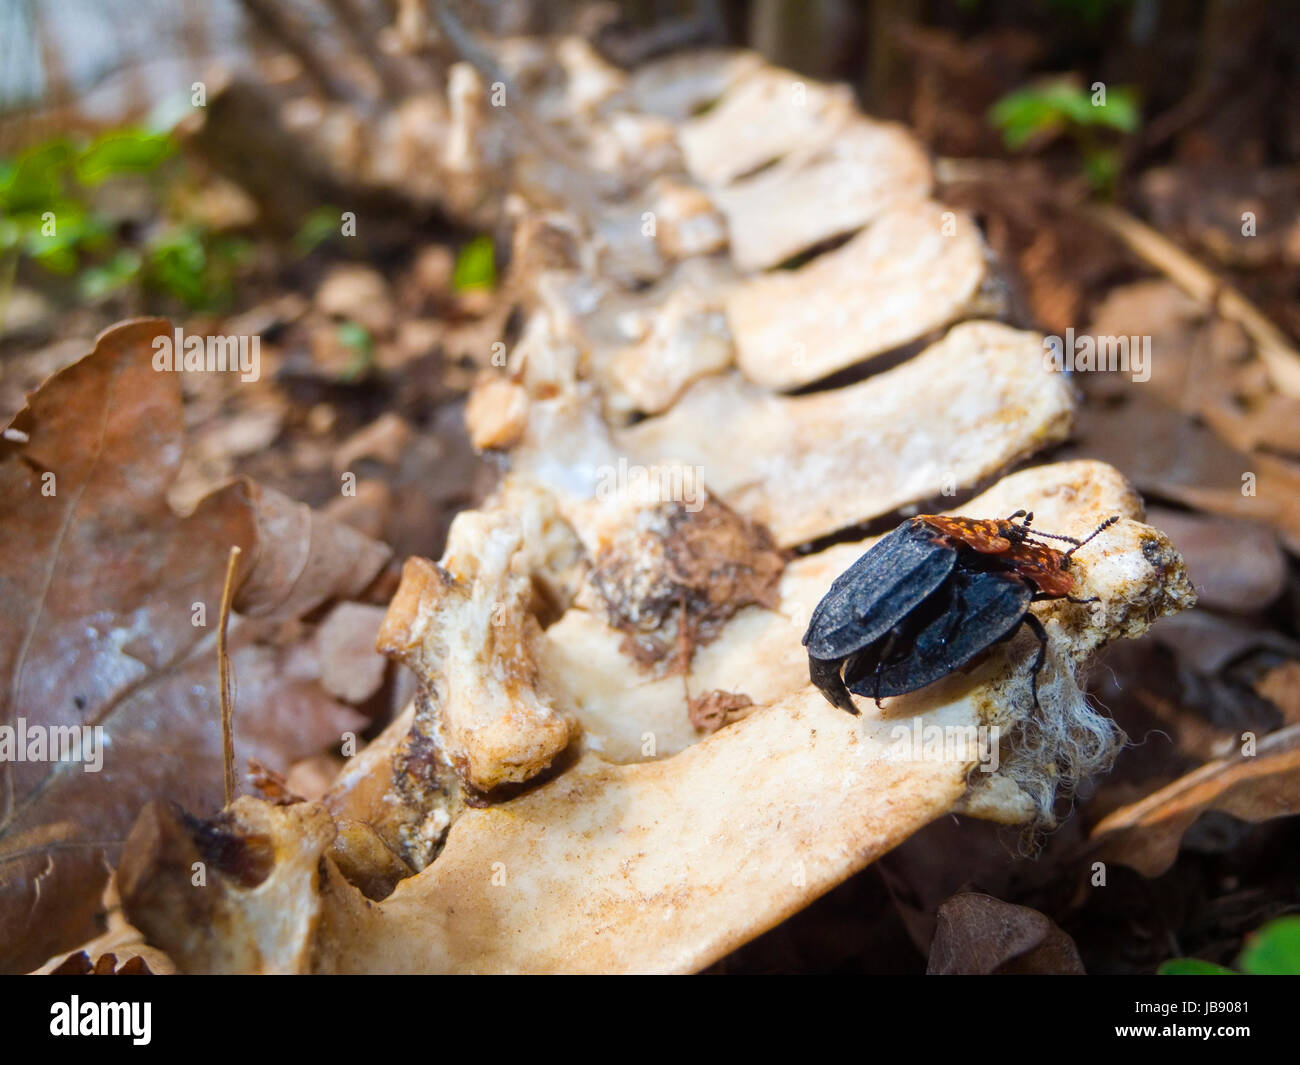 zwei sich paarende Aaskäfer (Oiceoptoma thoracicum) auf einem Knochen am Waldboden Stock Photo